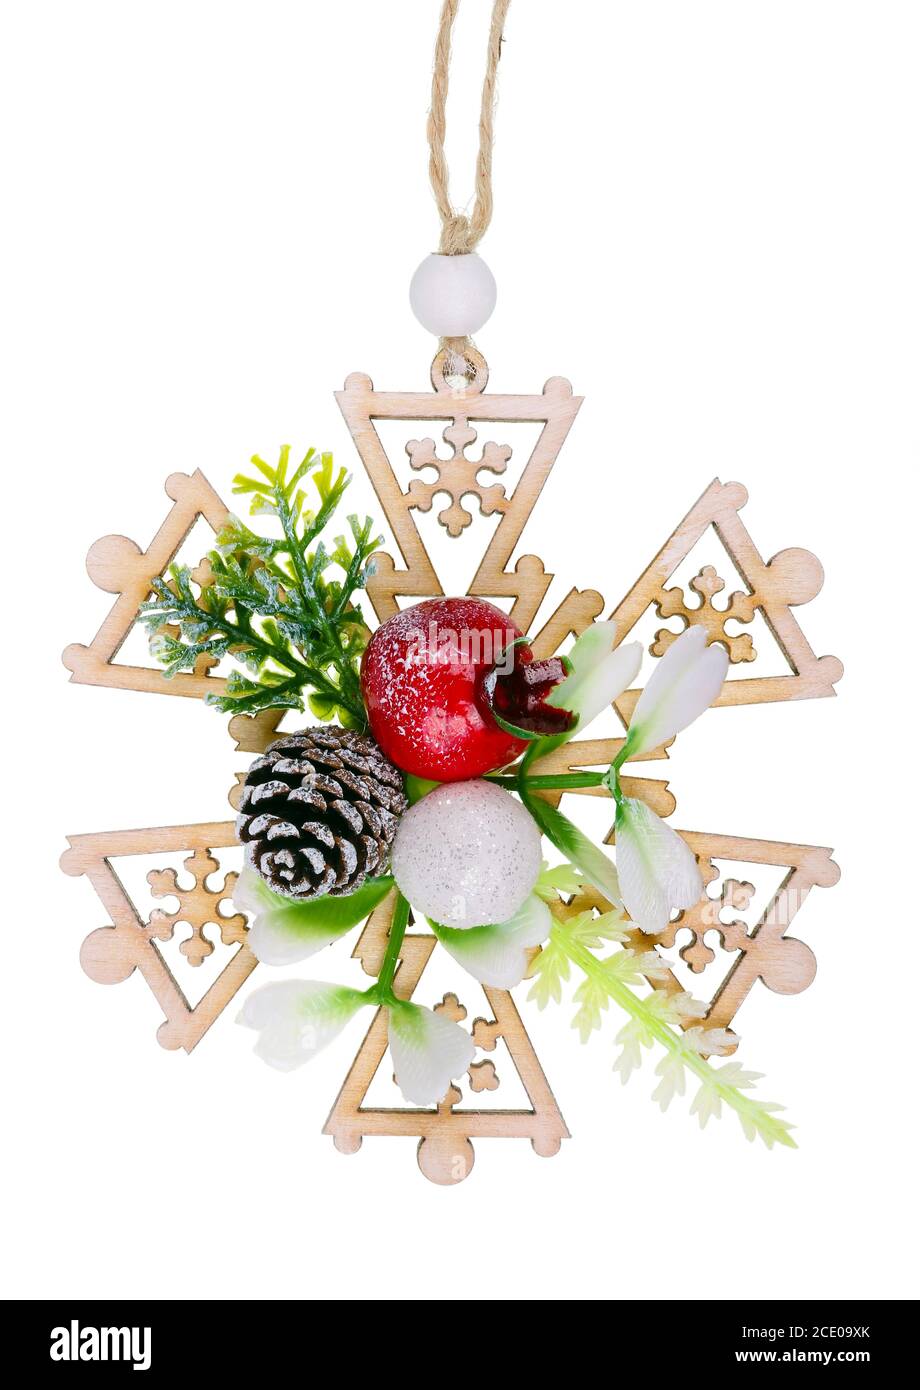 Copo de nieve de juguete casero de Navidad en estilo rústico hecho de pino cono plástico y madera aislada macro Foto de stock